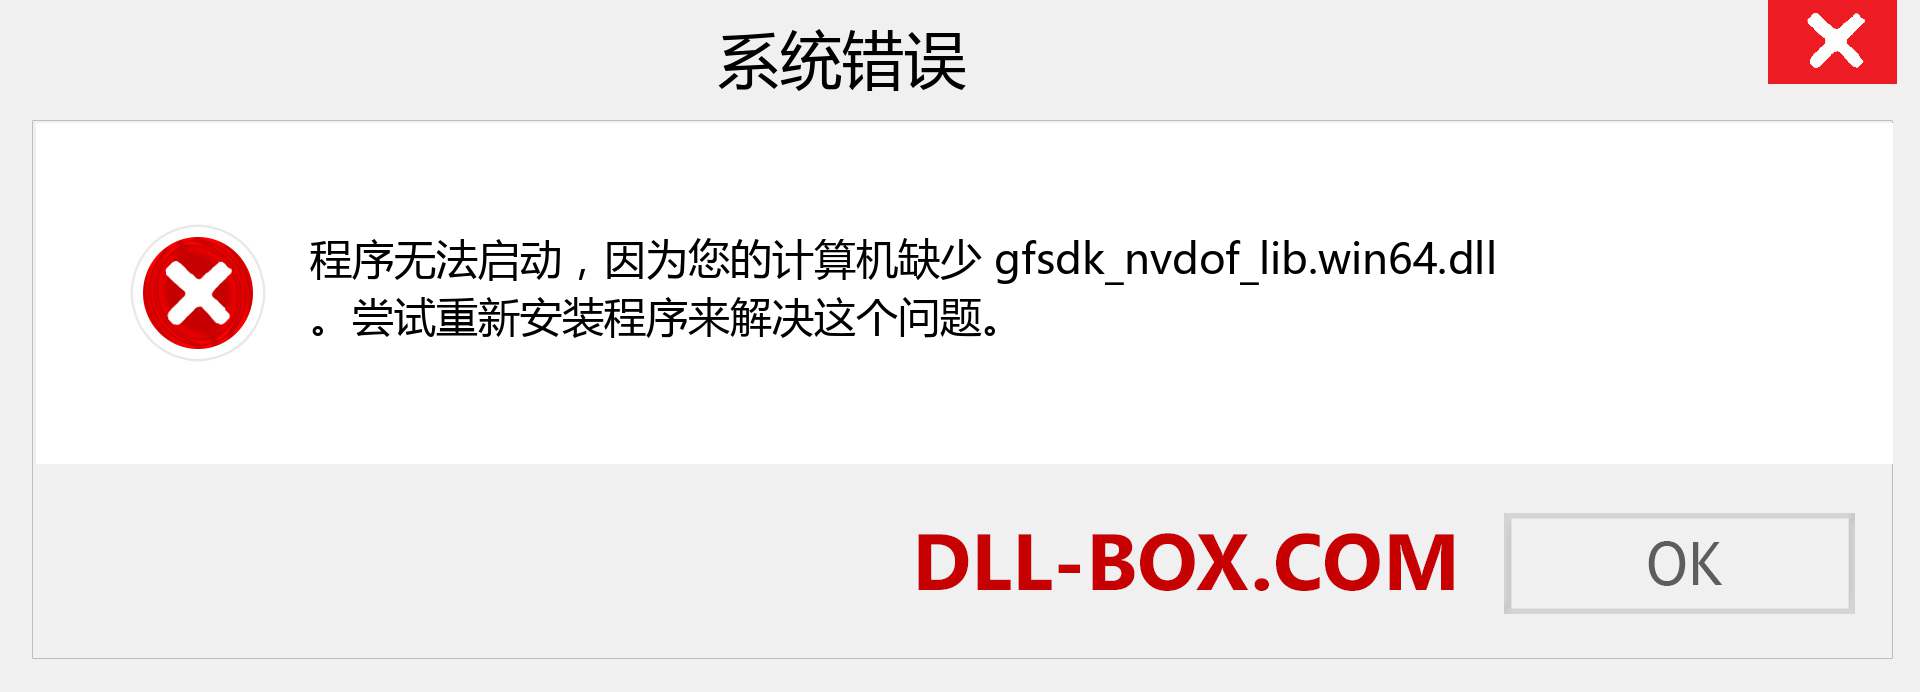 gfsdk_nvdof_lib.win64.dll 文件丢失？。 适用于 Windows 7、8、10 的下载 - 修复 Windows、照片、图像上的 gfsdk_nvdof_lib.win64 dll 丢失错误